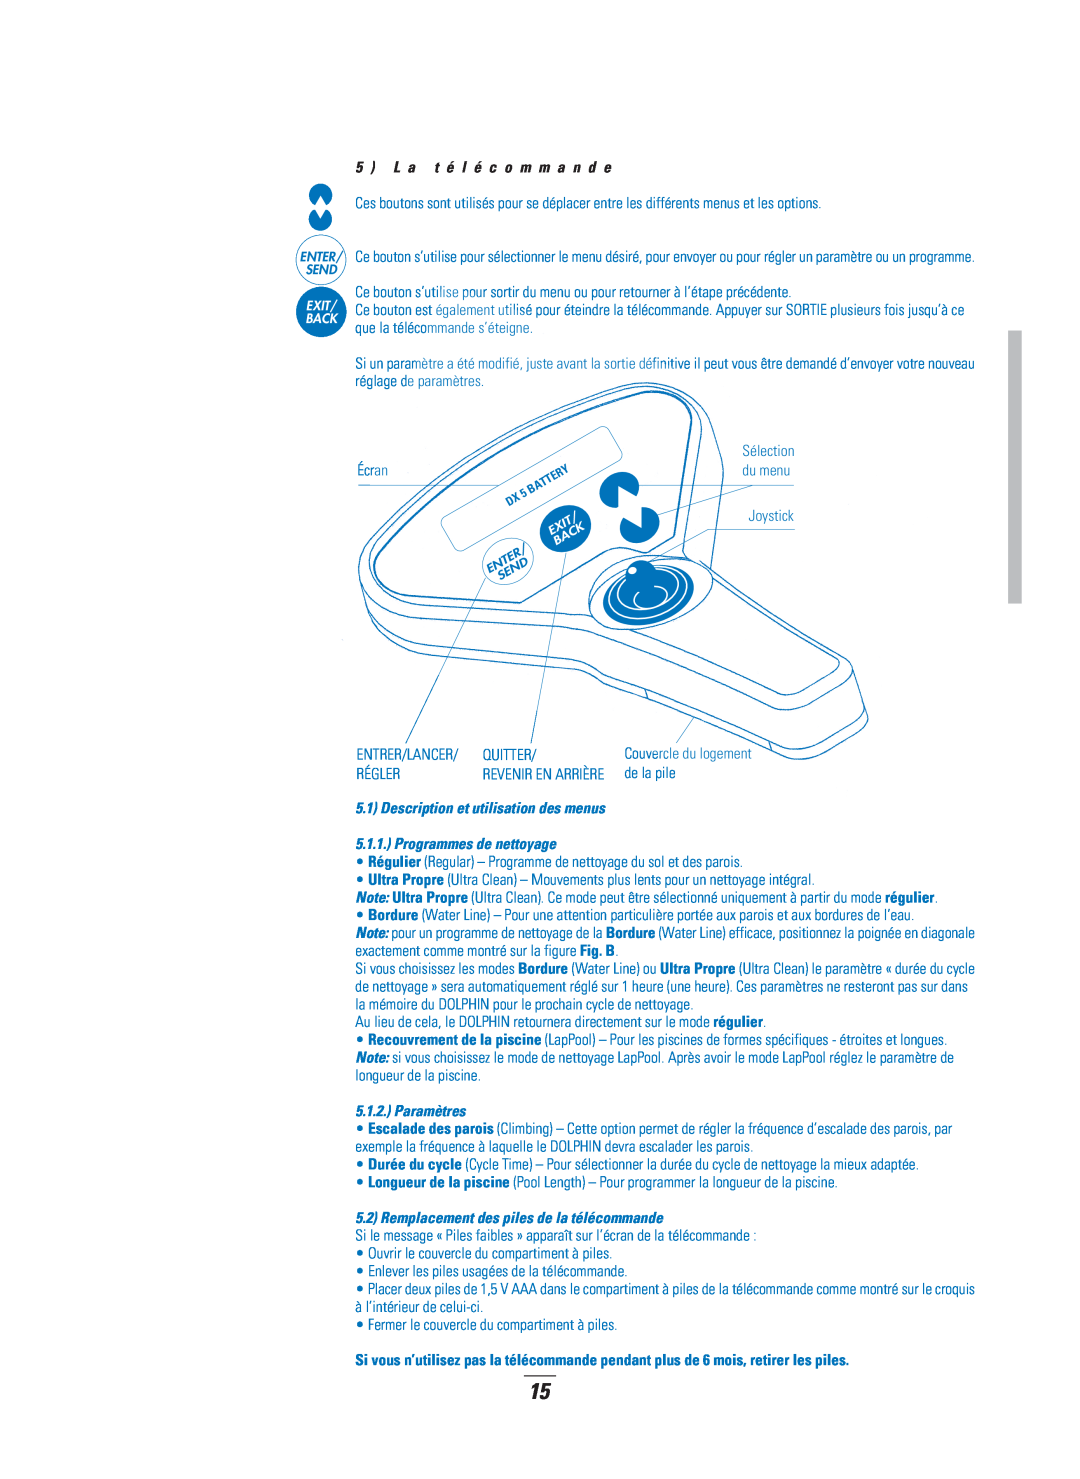 Dolphin Peripherals DX5B manual Description et utilisation des menus, Programmes de nettoyage, Paramètres, Écran 